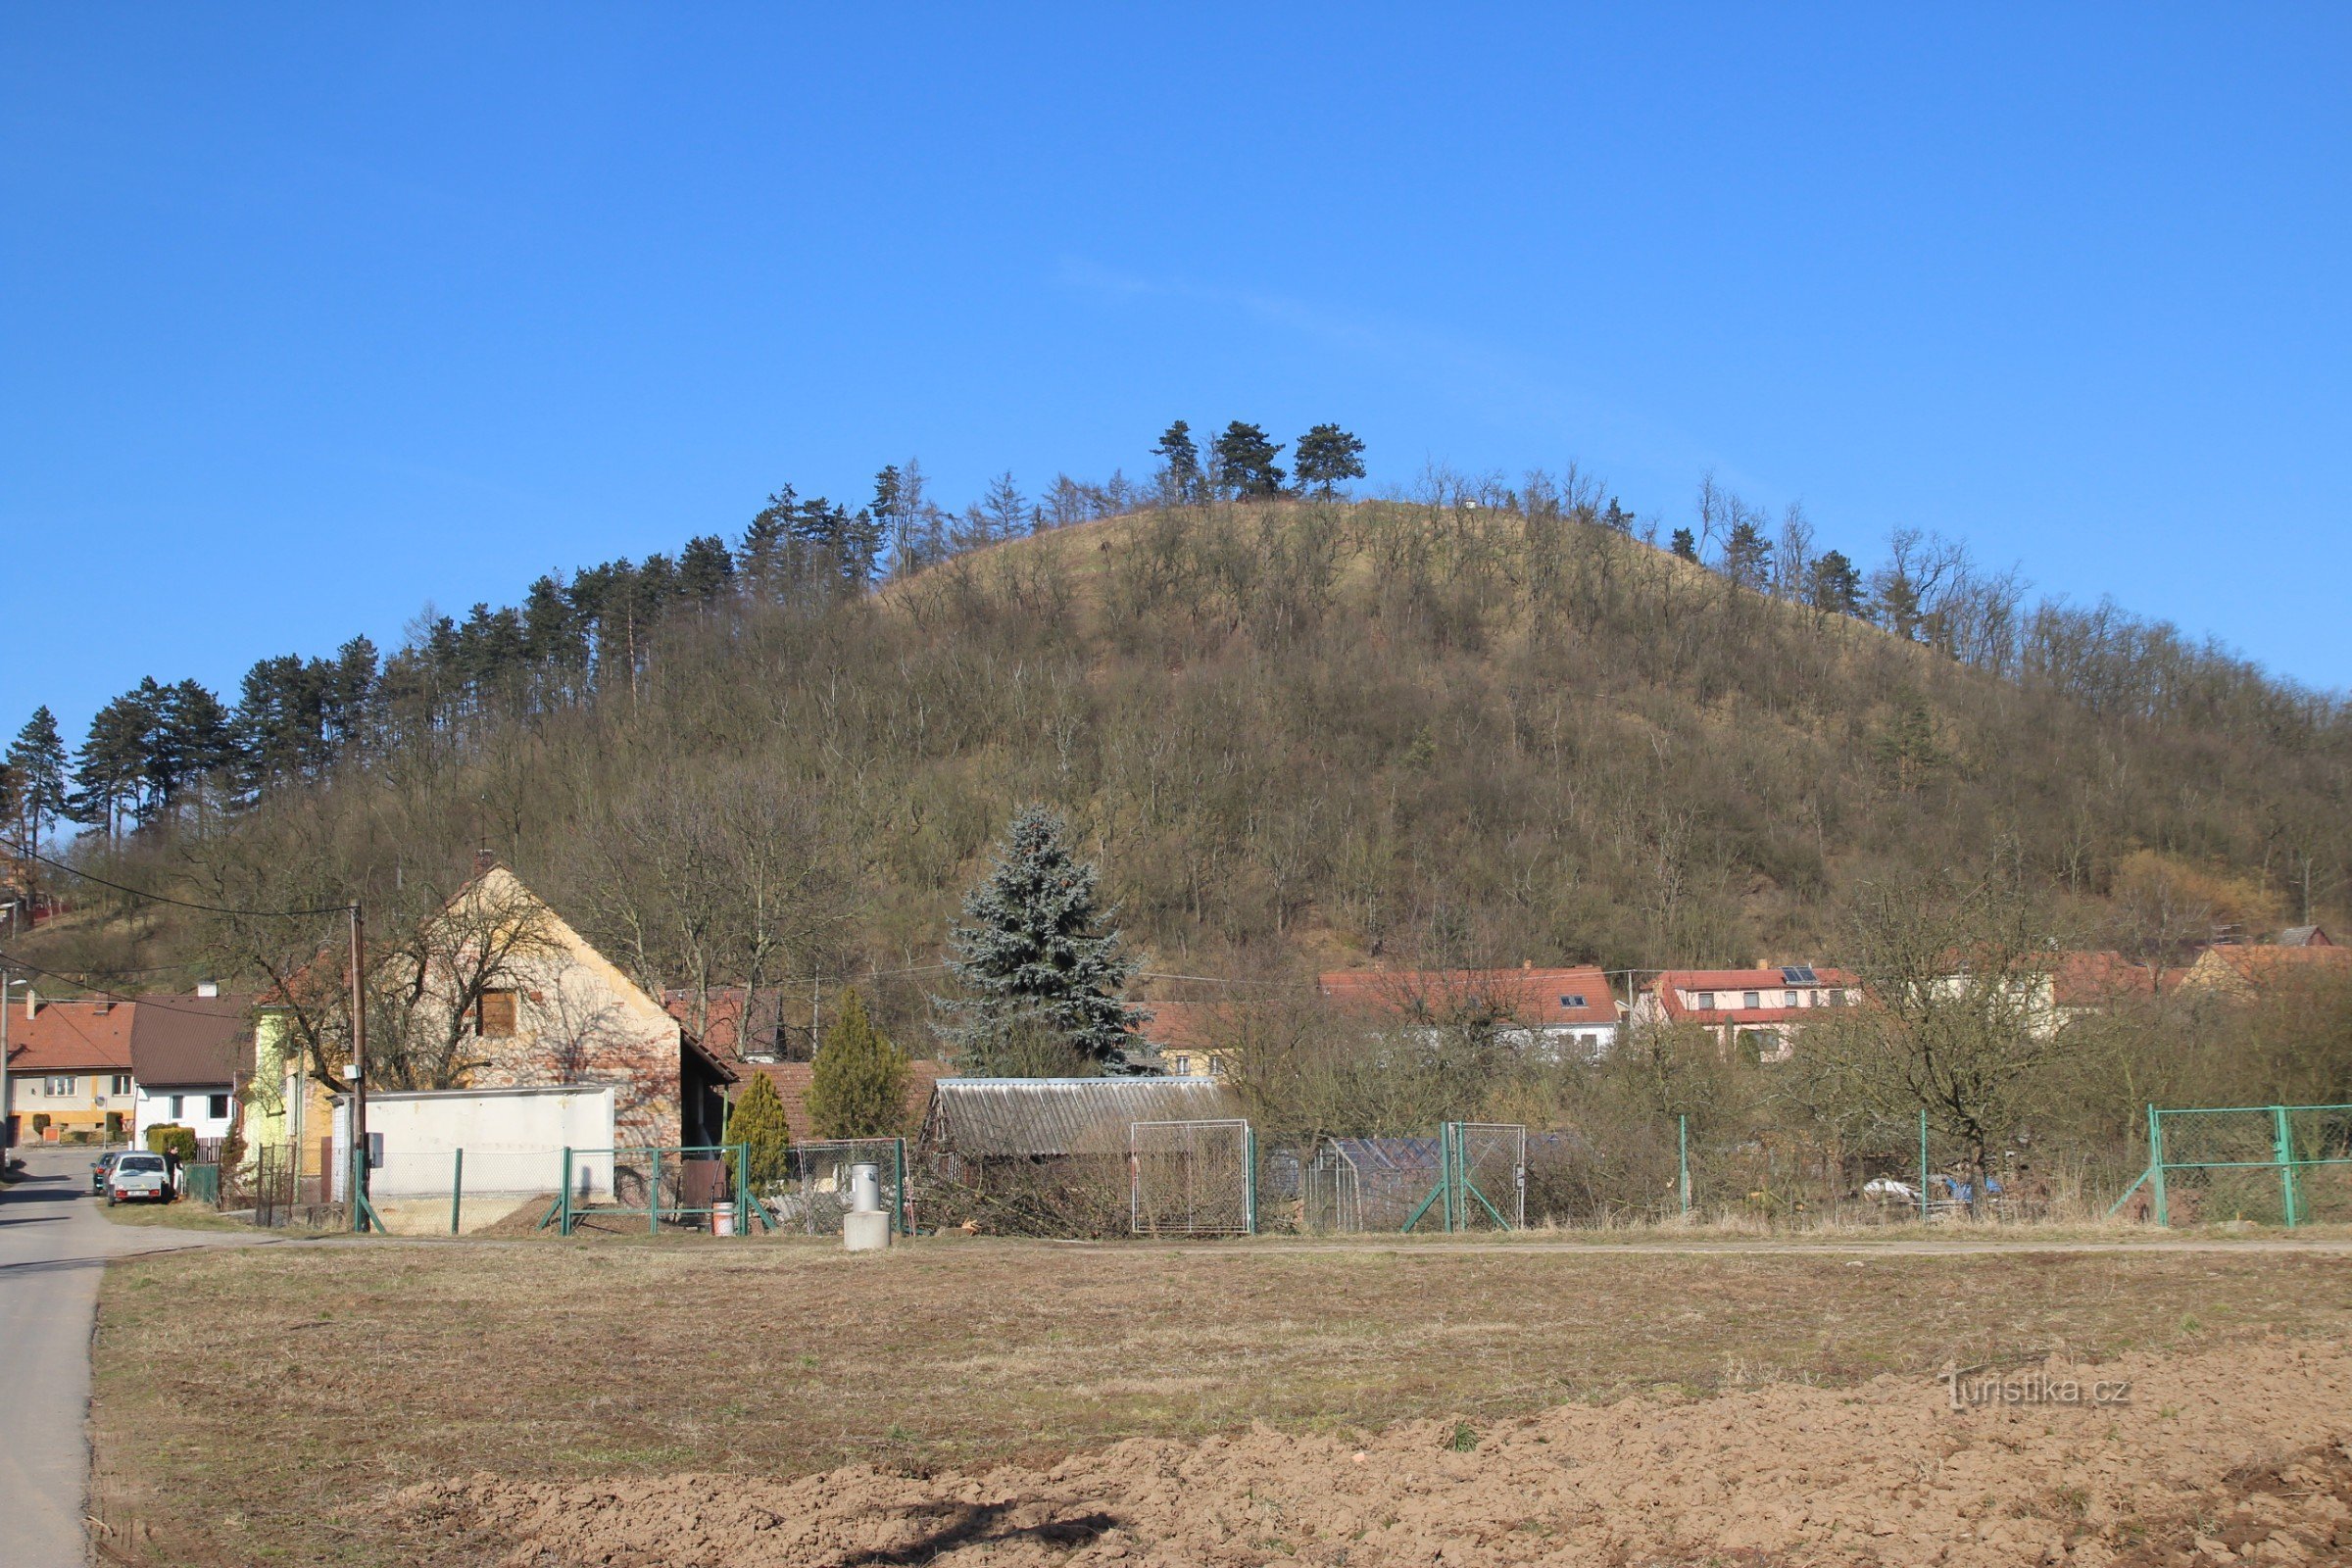 Hradisko 丘の概観